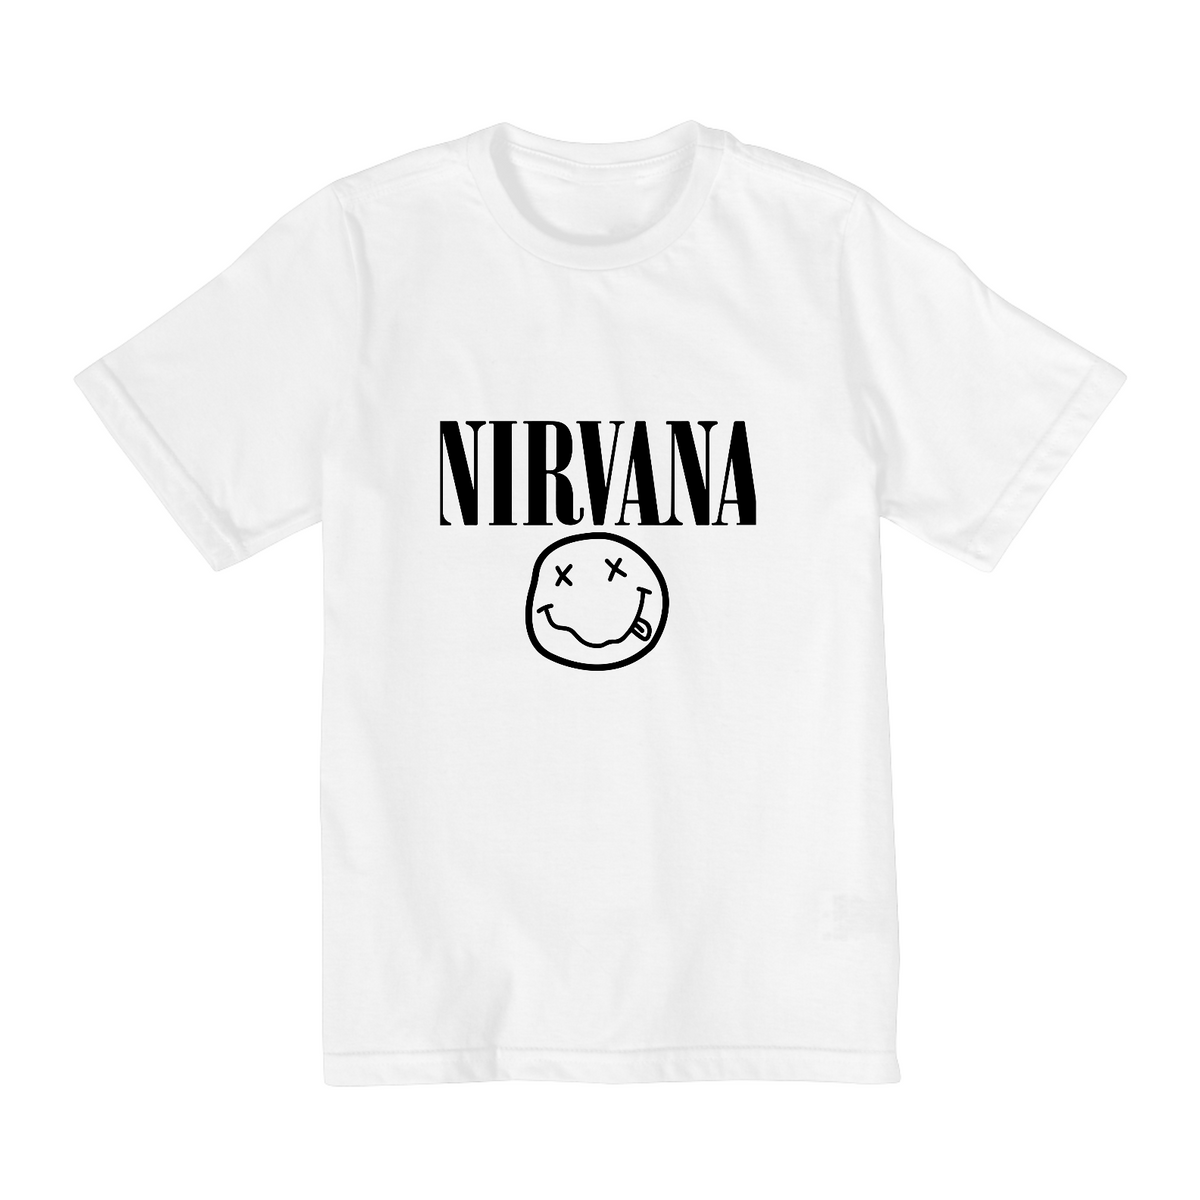 Nome do produto: Camiseta Infantil 10 a 14 anos - Bandas - Nirvana 